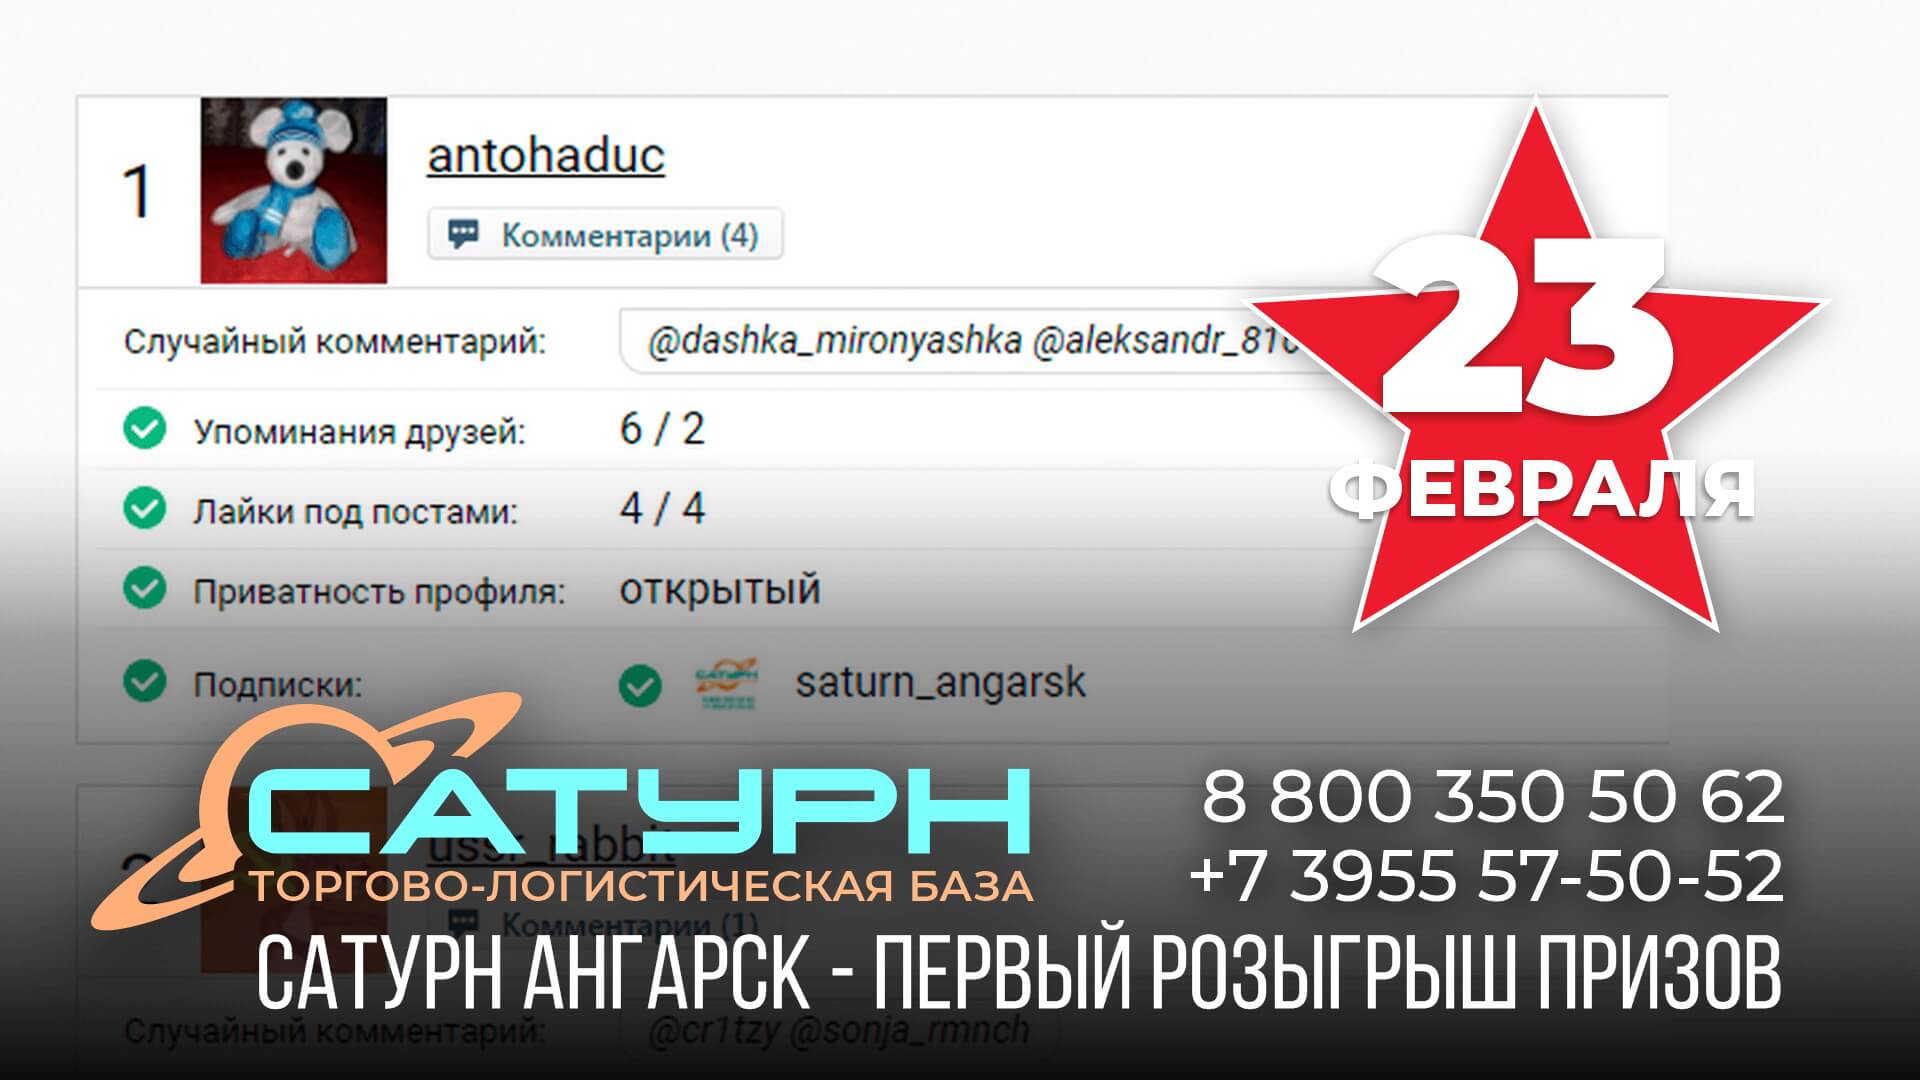 Поздравляем нашего первого победителя: @antohaduc, сертификат на 15000 рублей от «Электриз»